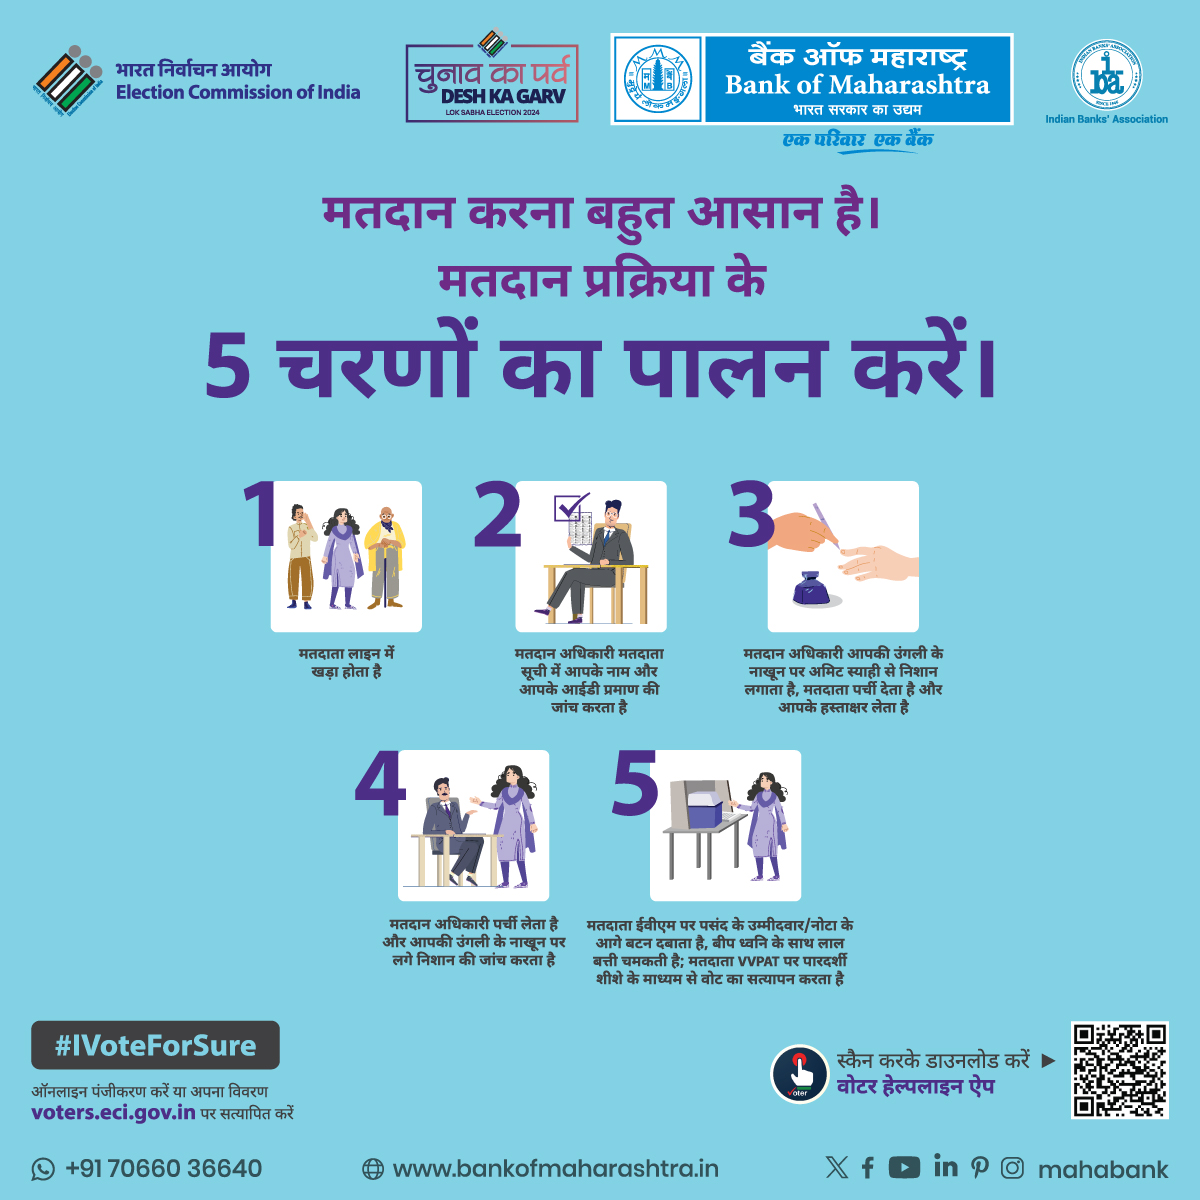 मतदान केंद्र में इन 5 चरणों का पालन अवश्य करें। इससे आप मतदान प्रक्रिया को सुगम और आसान बनाते है। अपने मताधिकार का प्रयोग करें।  
@ecisveep
@DFS_India
#BankofMaharashtra #Mahabank #EveryVoteCounts #SmartVoter #IVoteForSure